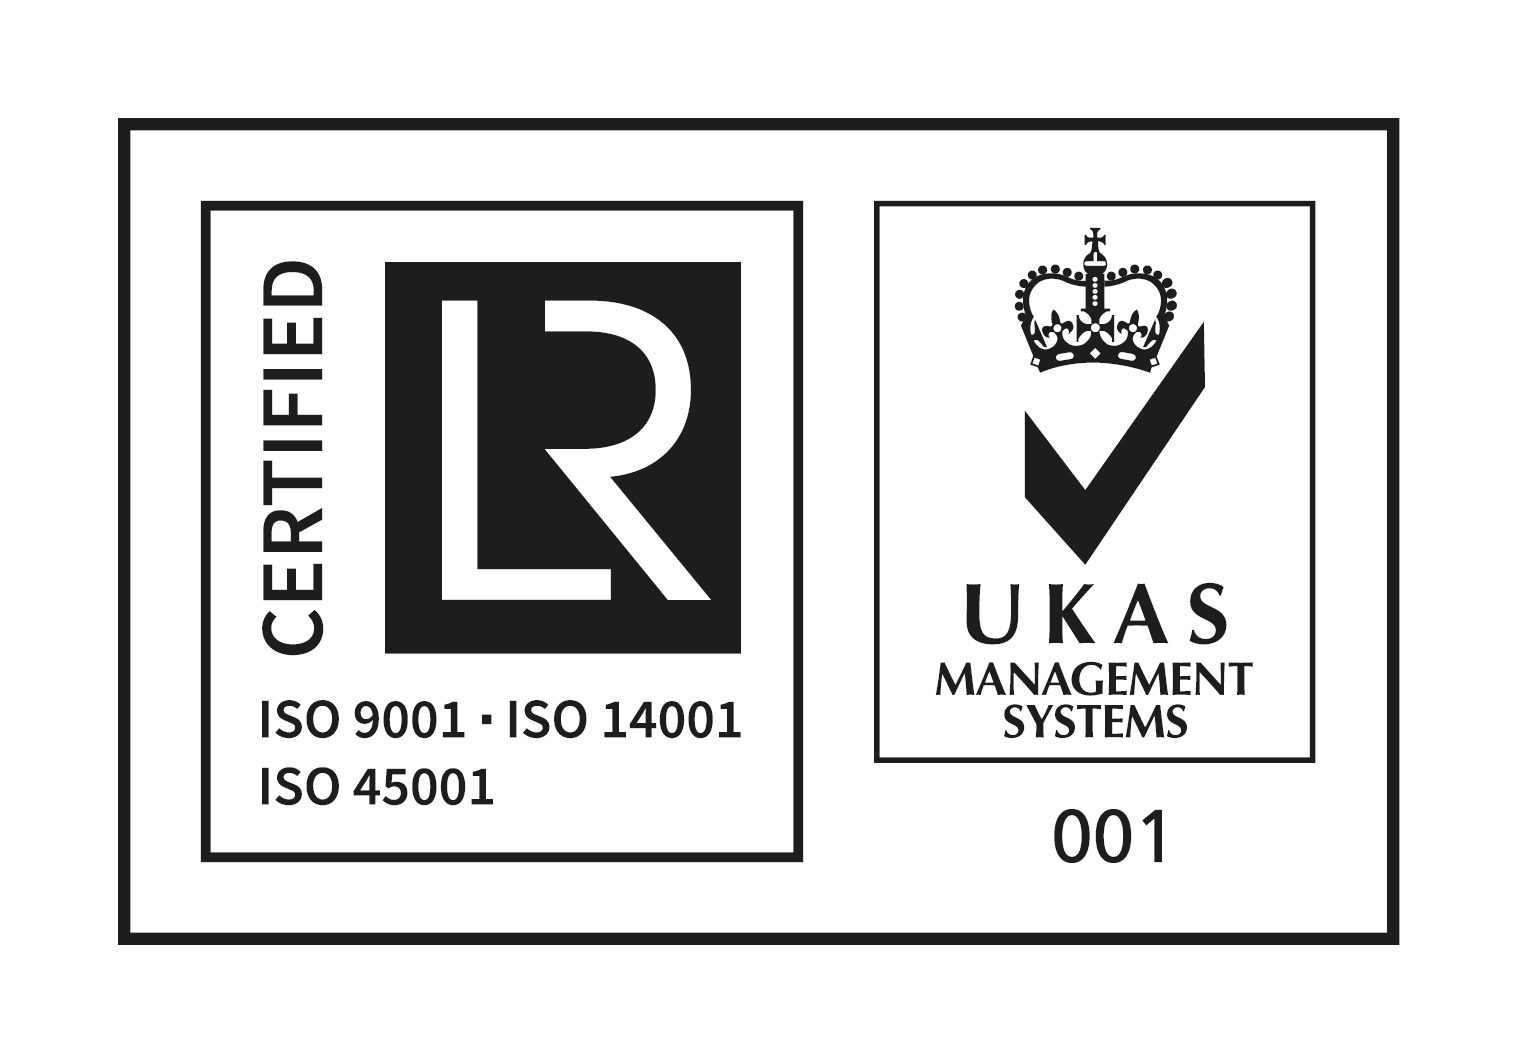 Lloyds Register UKAS certification logo